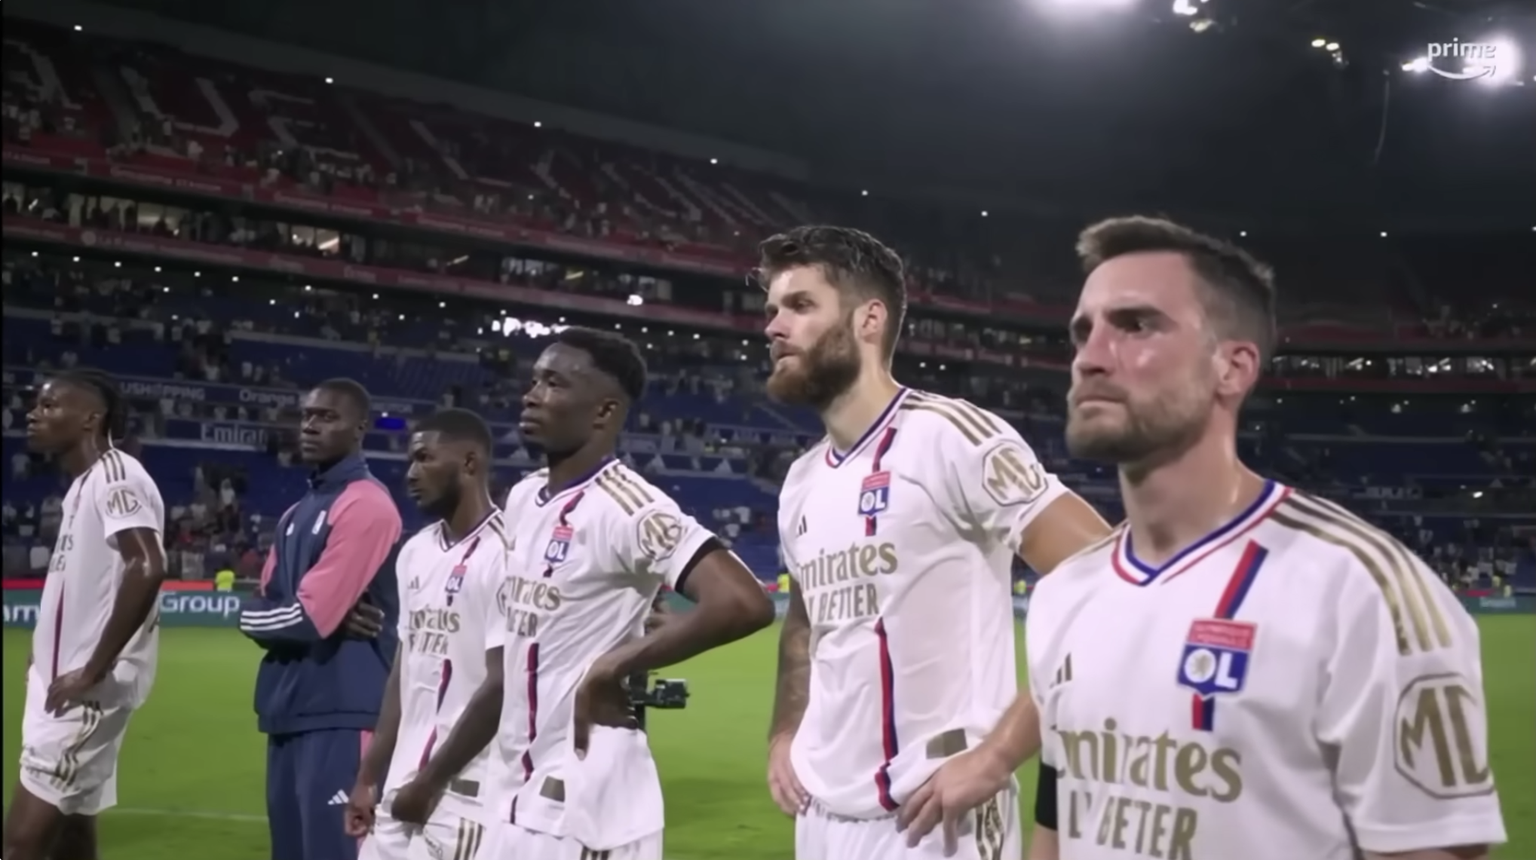 Lange Gesichter in Lyon: Die Spieler werden von den Fans konfrontiert.